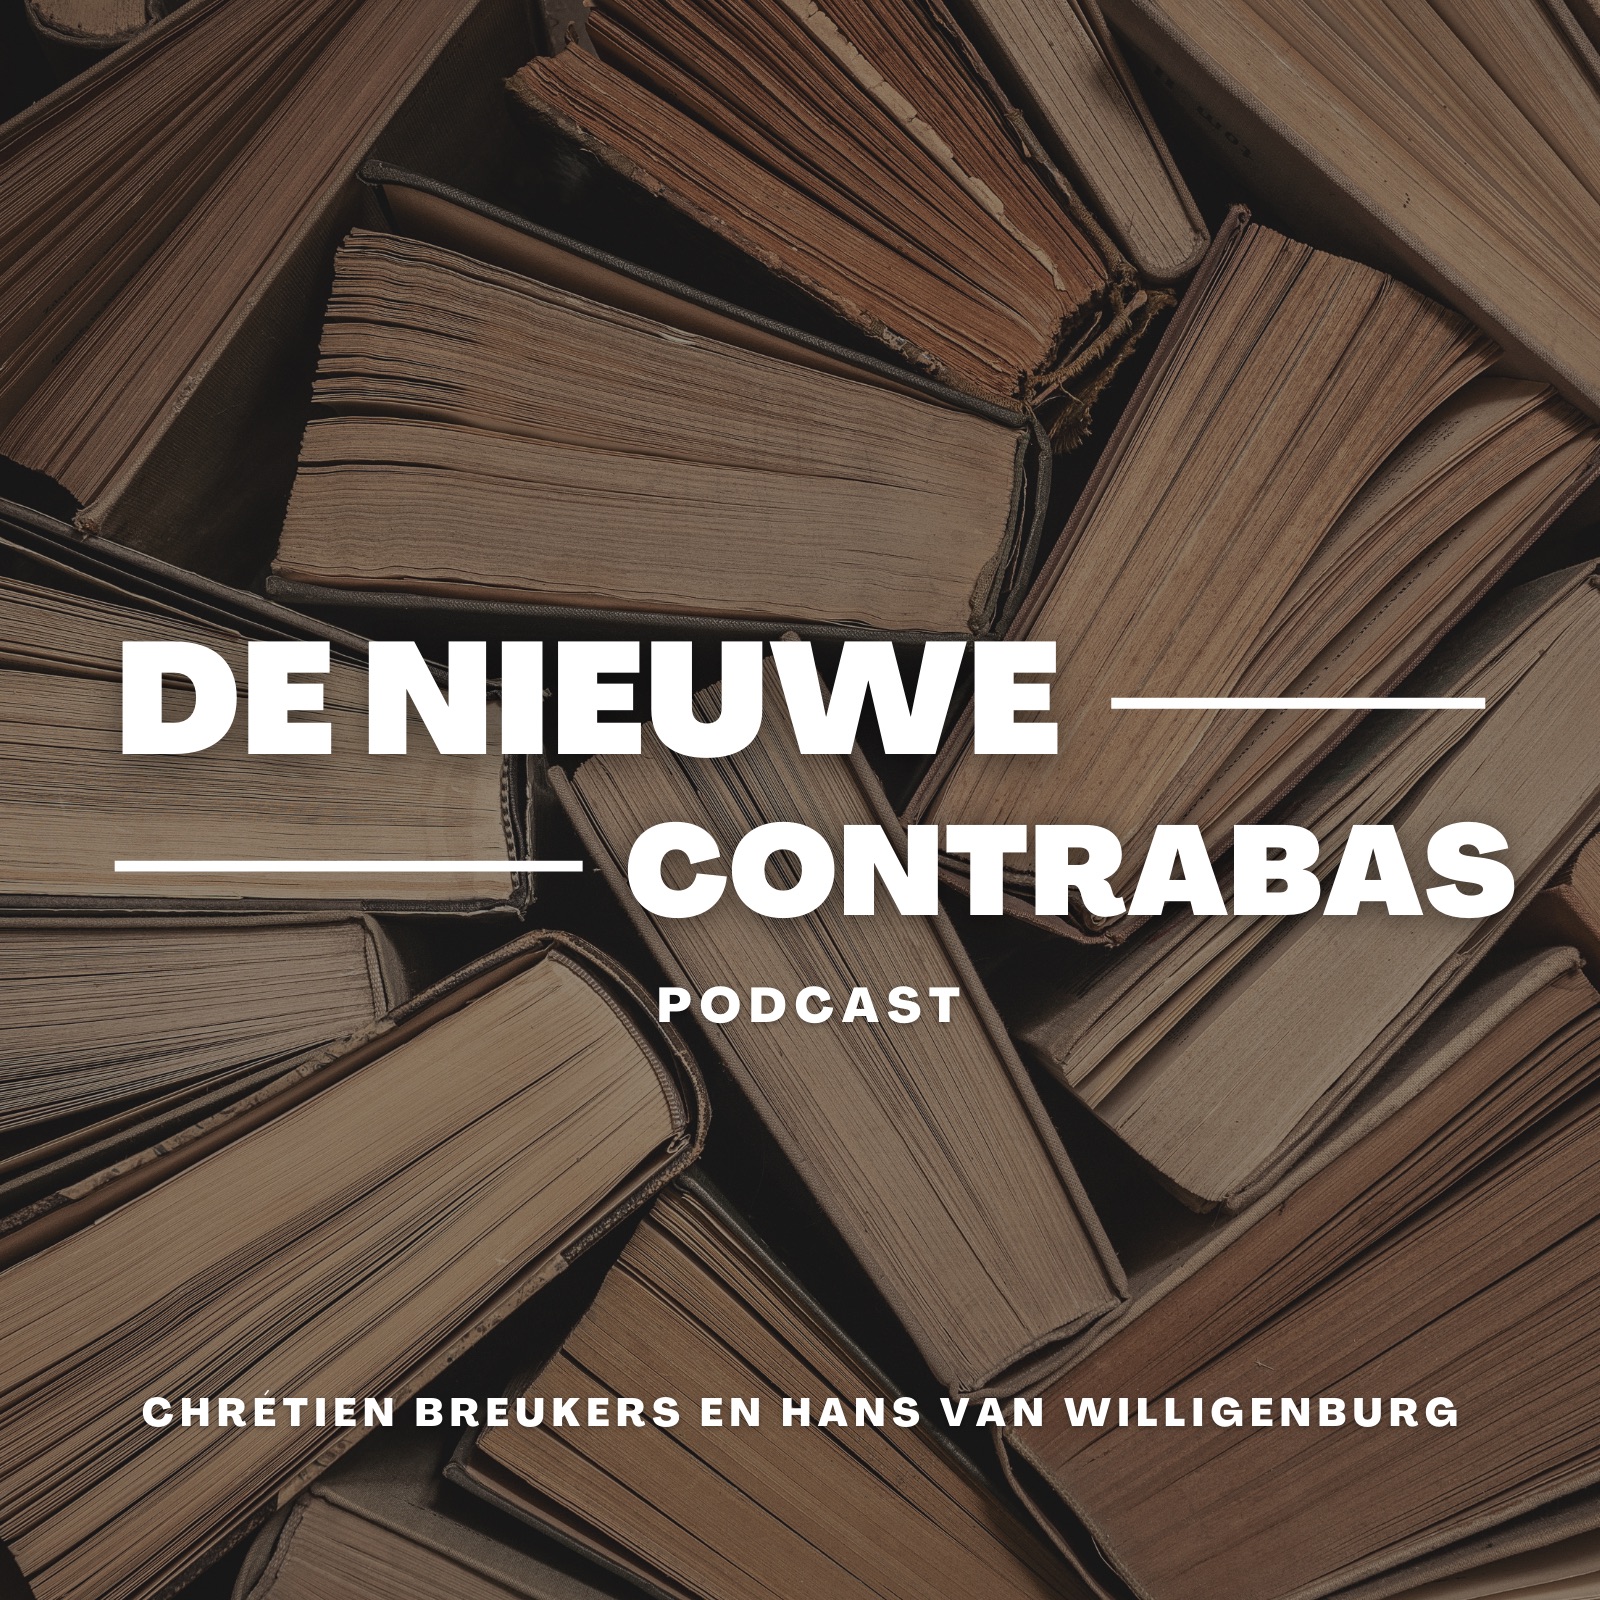 De Nieuwe Contrabas podcast